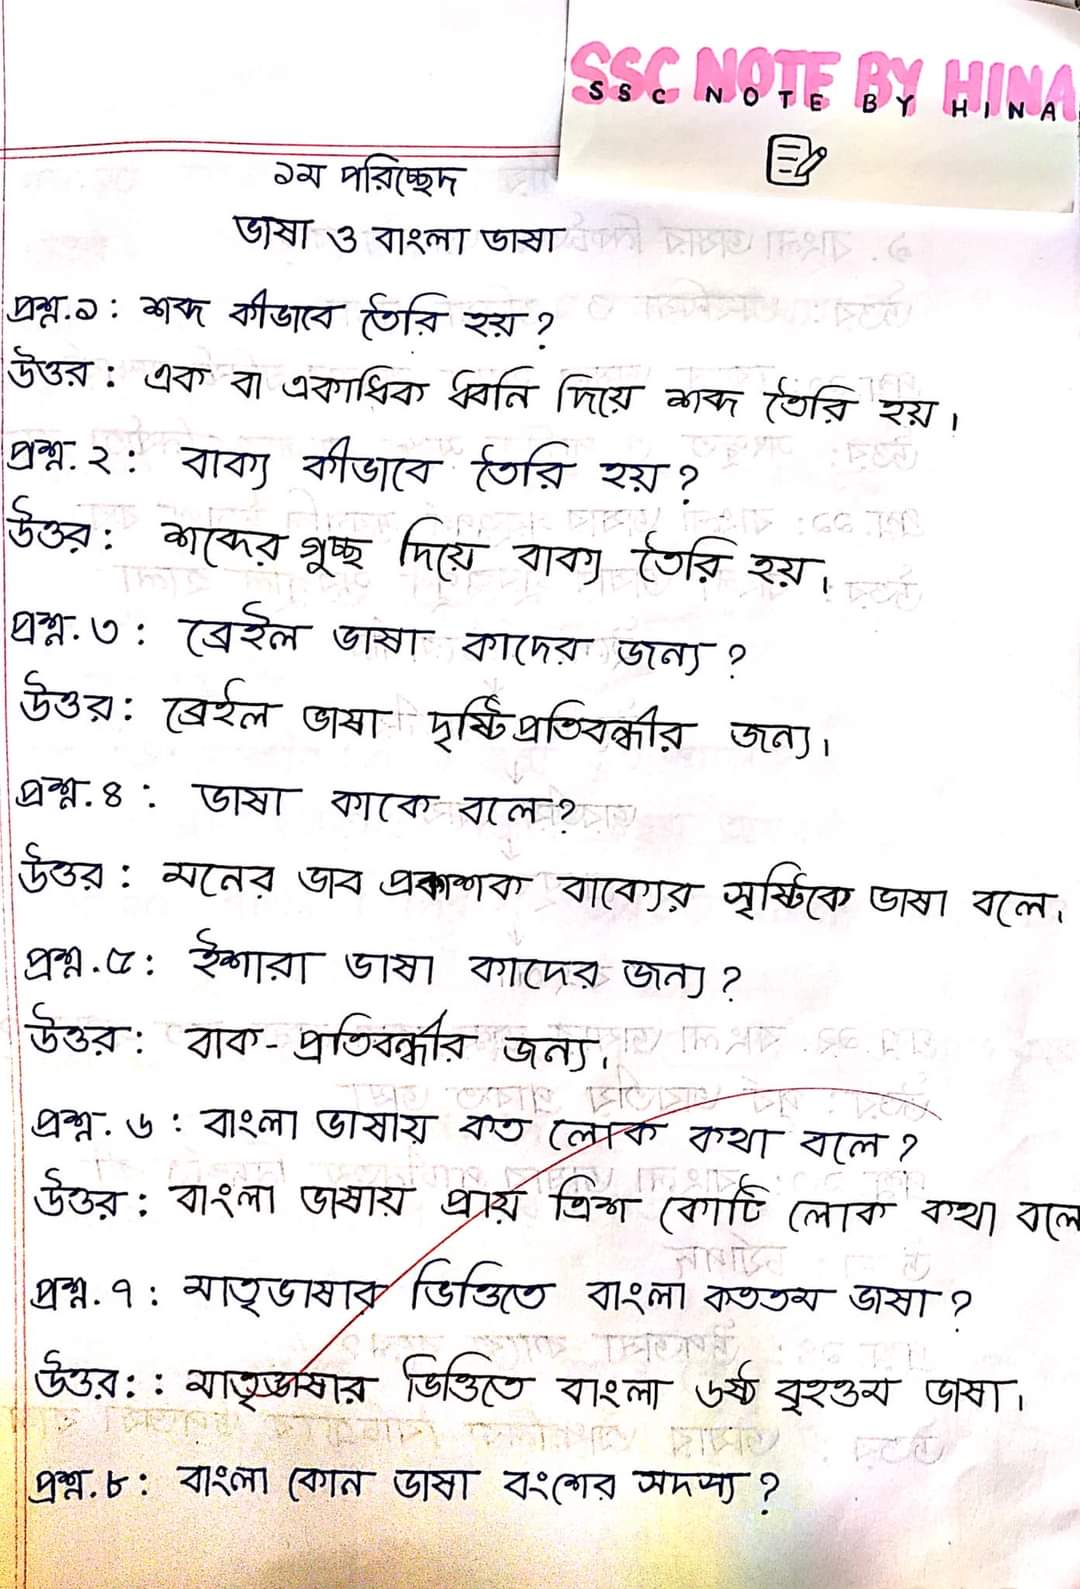 এসএসসি বাংলা ২য় পত্র ১ম অধ্যায় (ভাষা ও বাংলা ভাষা) নোট | SSC Bangla 2nd Paper Chapter 1 Note PDF